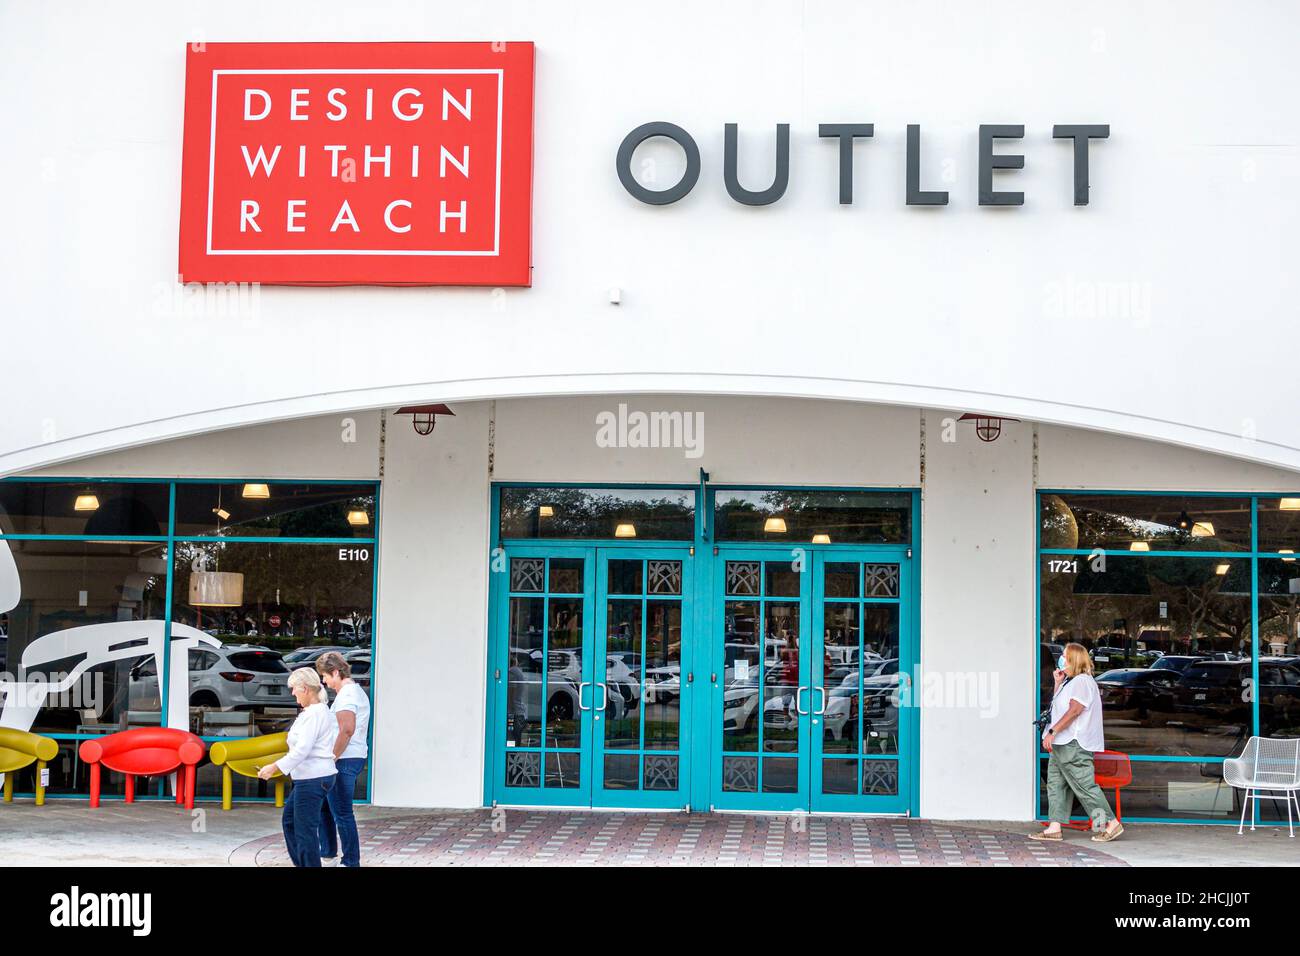 Vero Beach Florida Outlets outlet centro commerciale outlet negozio di fabbrica negozi di design entro raggiungere mobili fuori segno di ingresso esterno Foto Stock